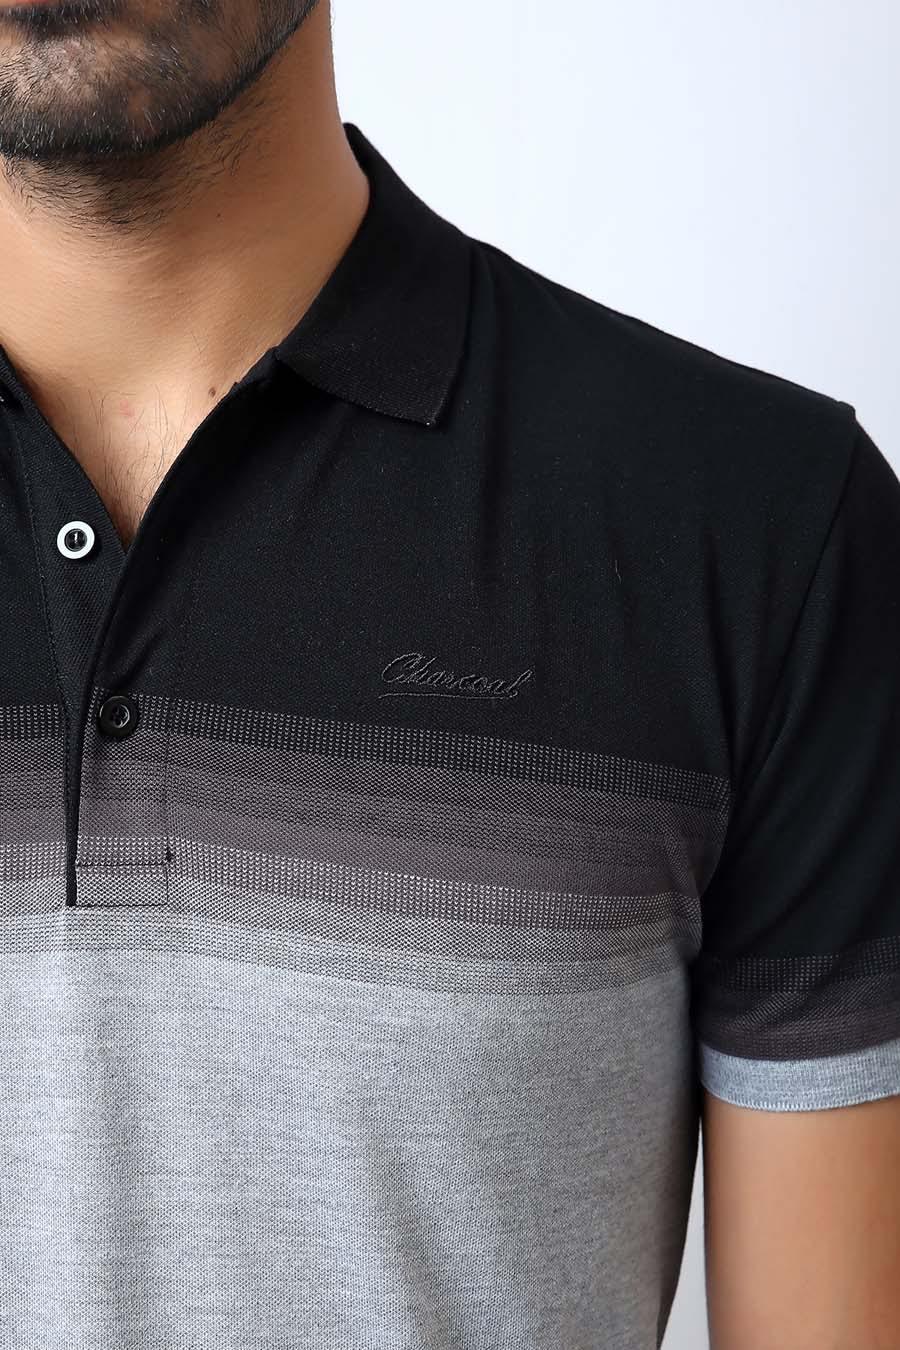 T Shirt Polo Grey Black at Charcoal Clothing